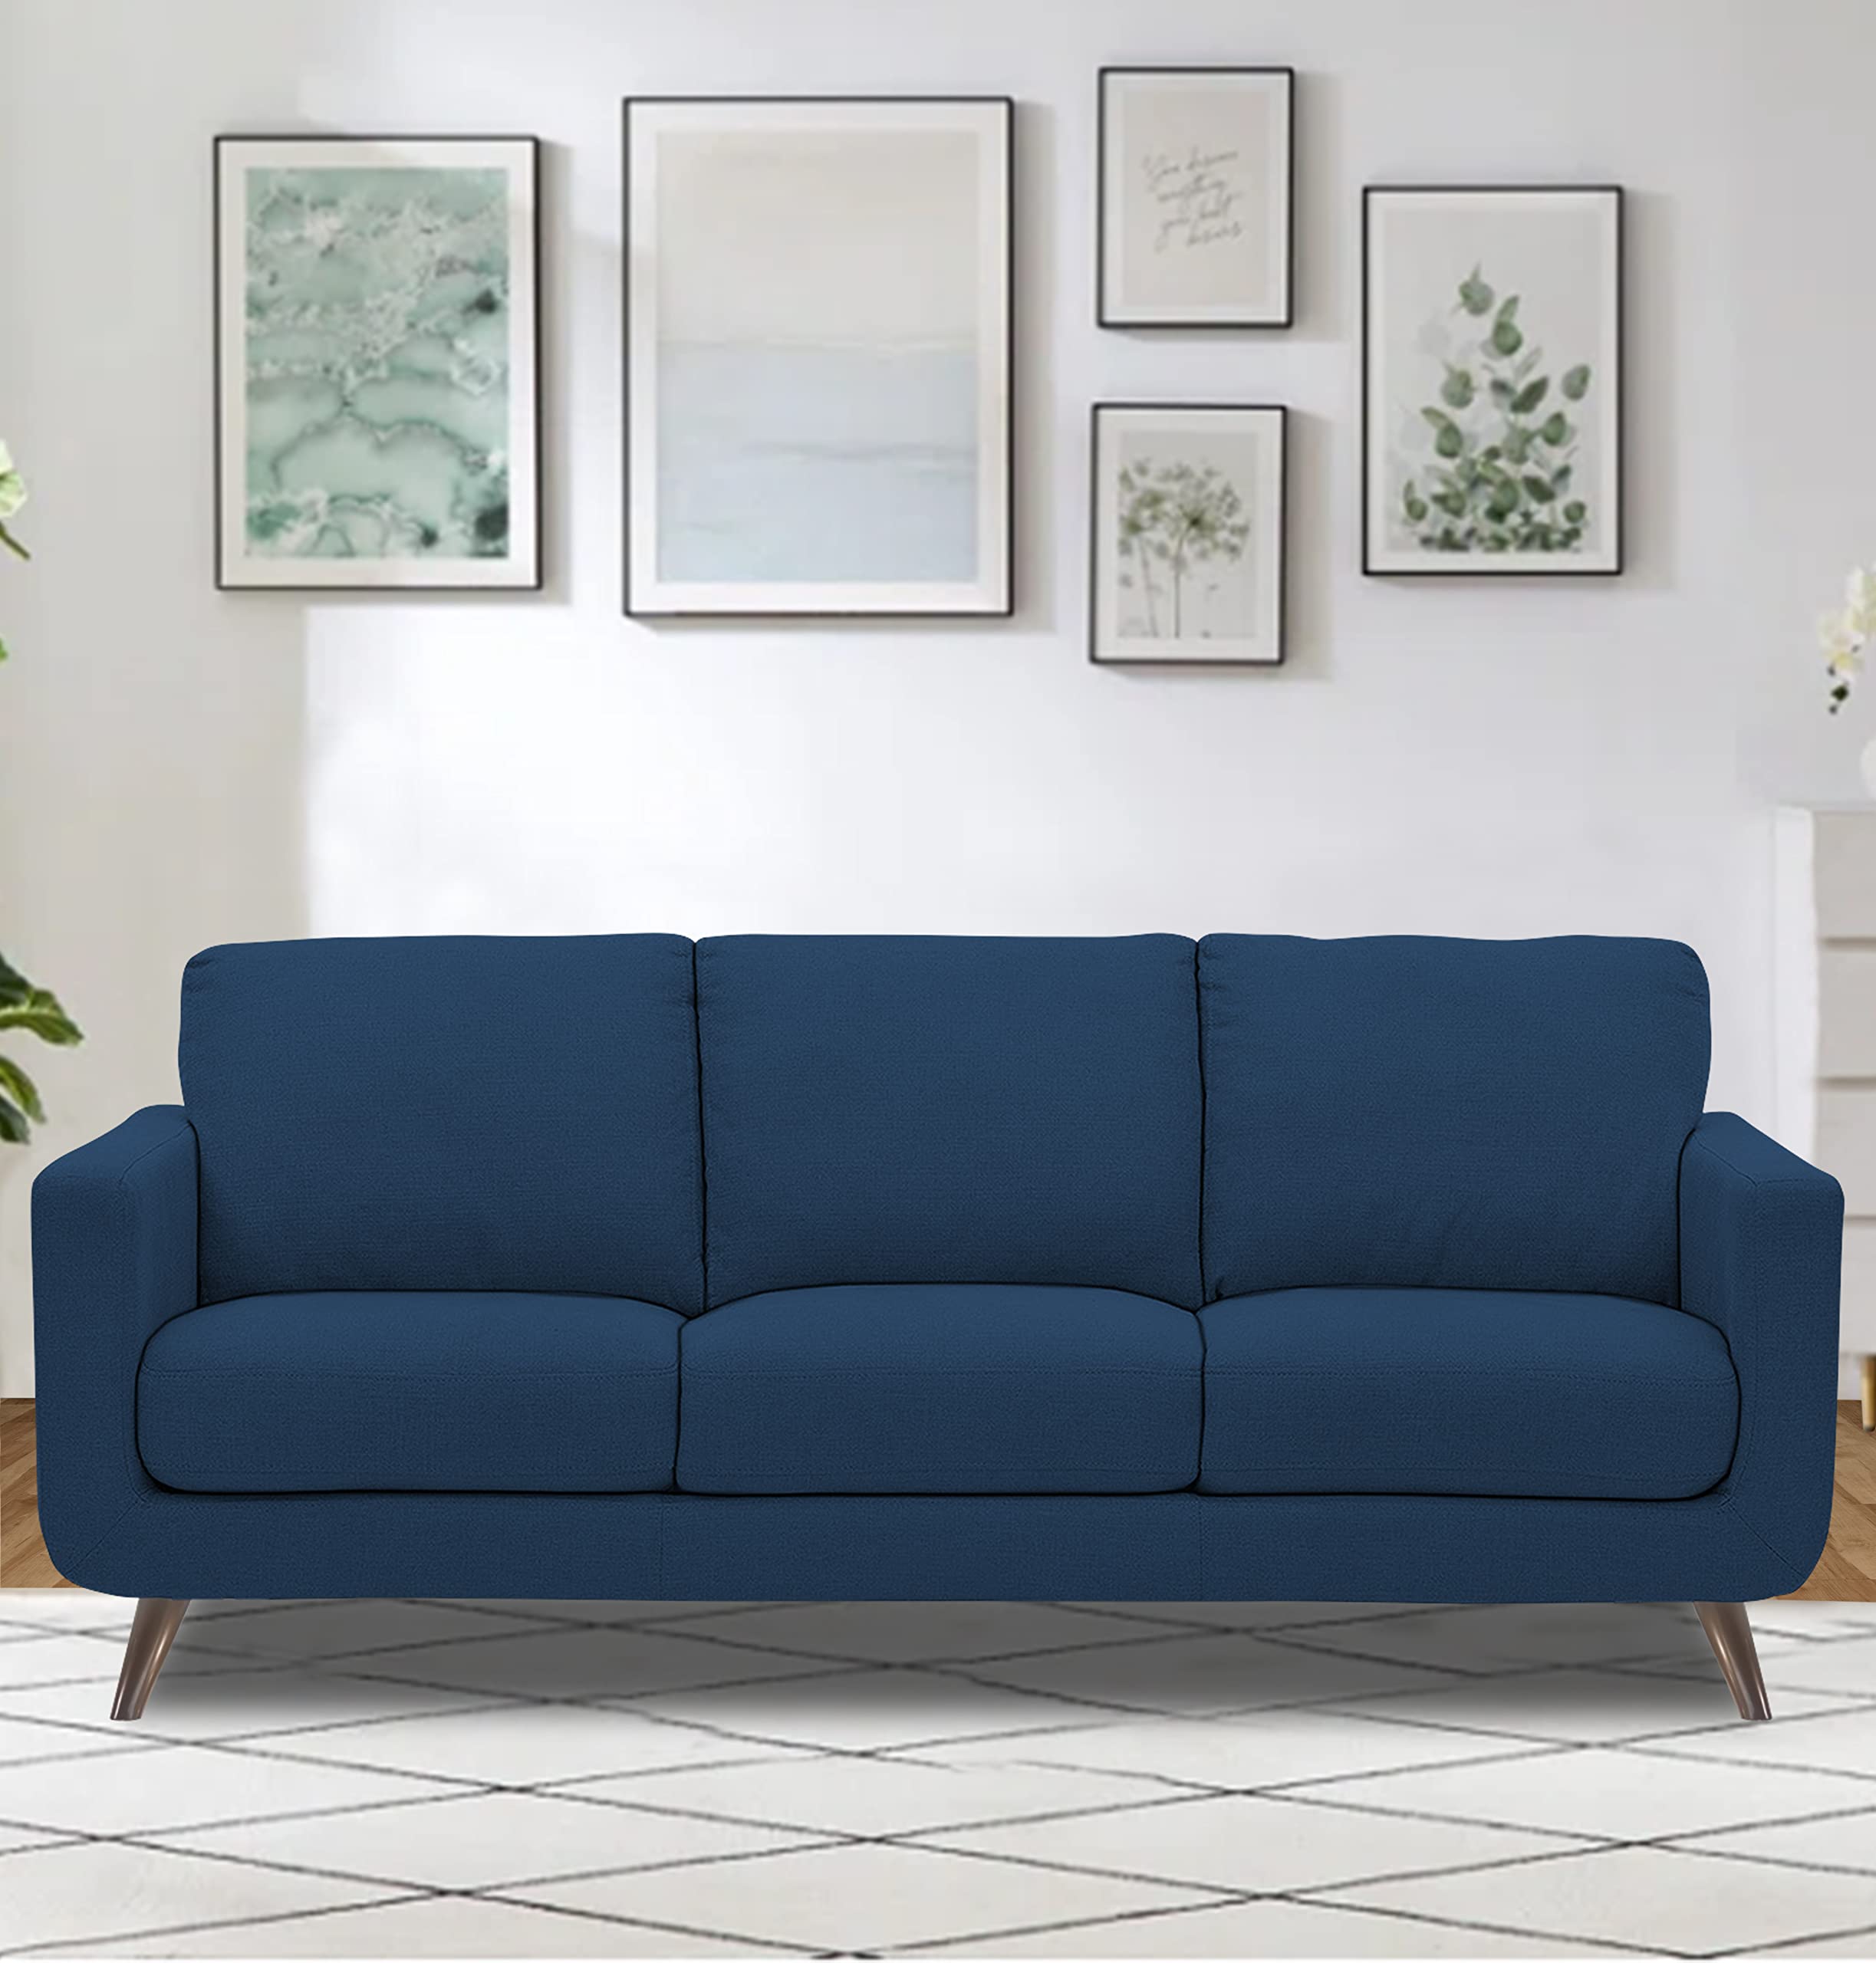 Adorn India Ashley Leatherette Fabric L Shape 6 Seater Sofa Set Plain